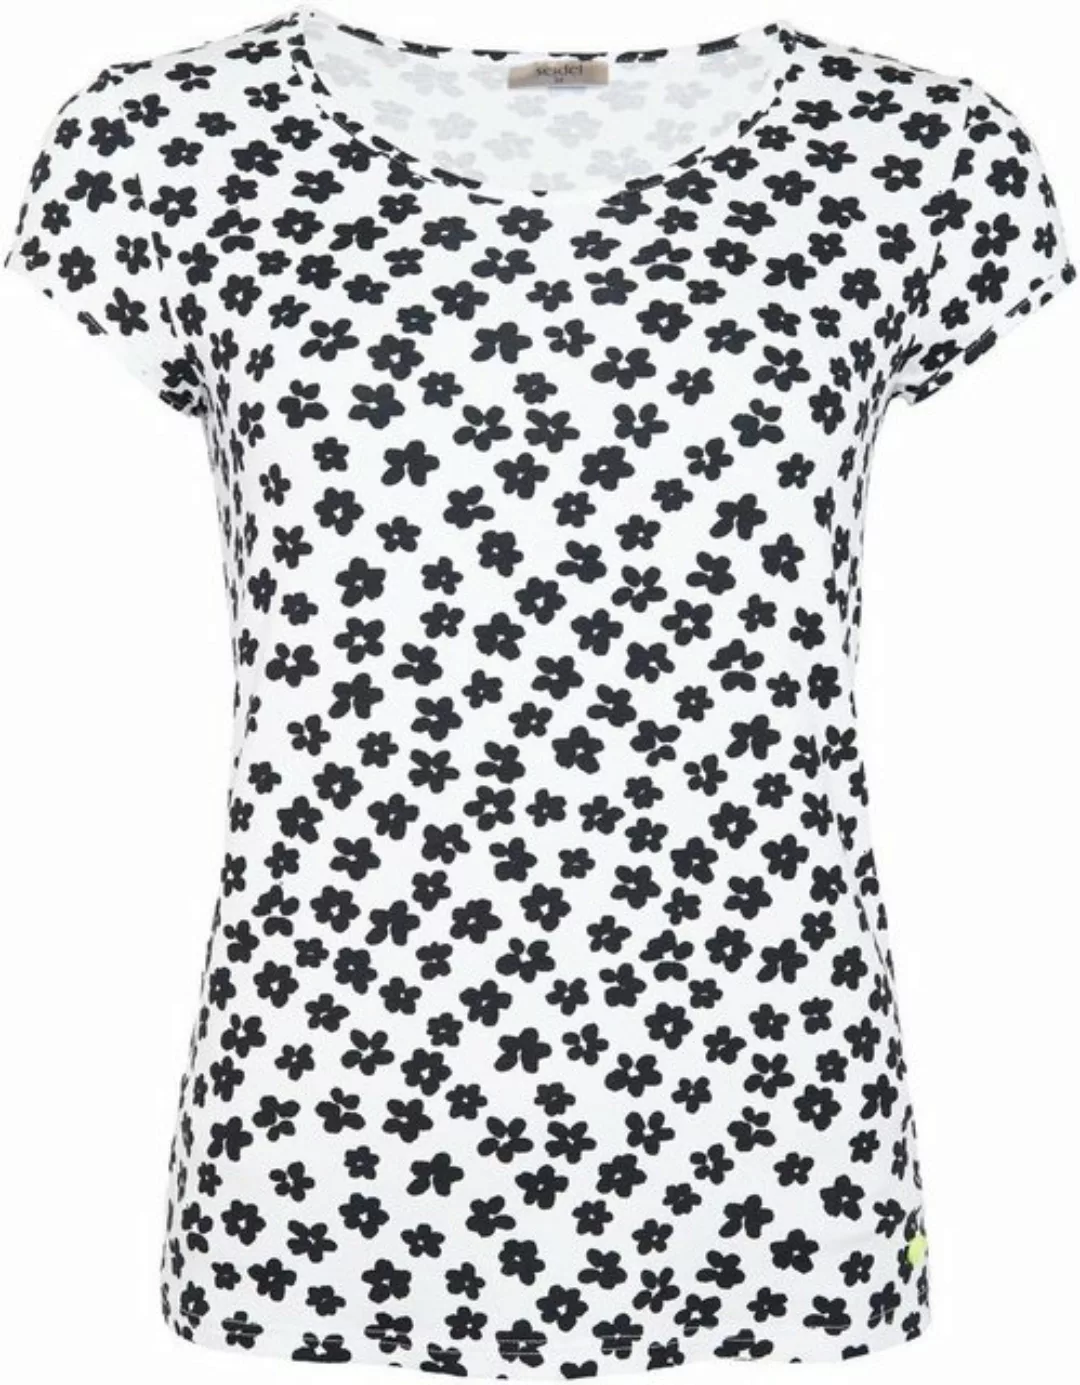 Seidel Moden T-Shirt mit Blumen-Allover-Print in Black and White, Made in G günstig online kaufen